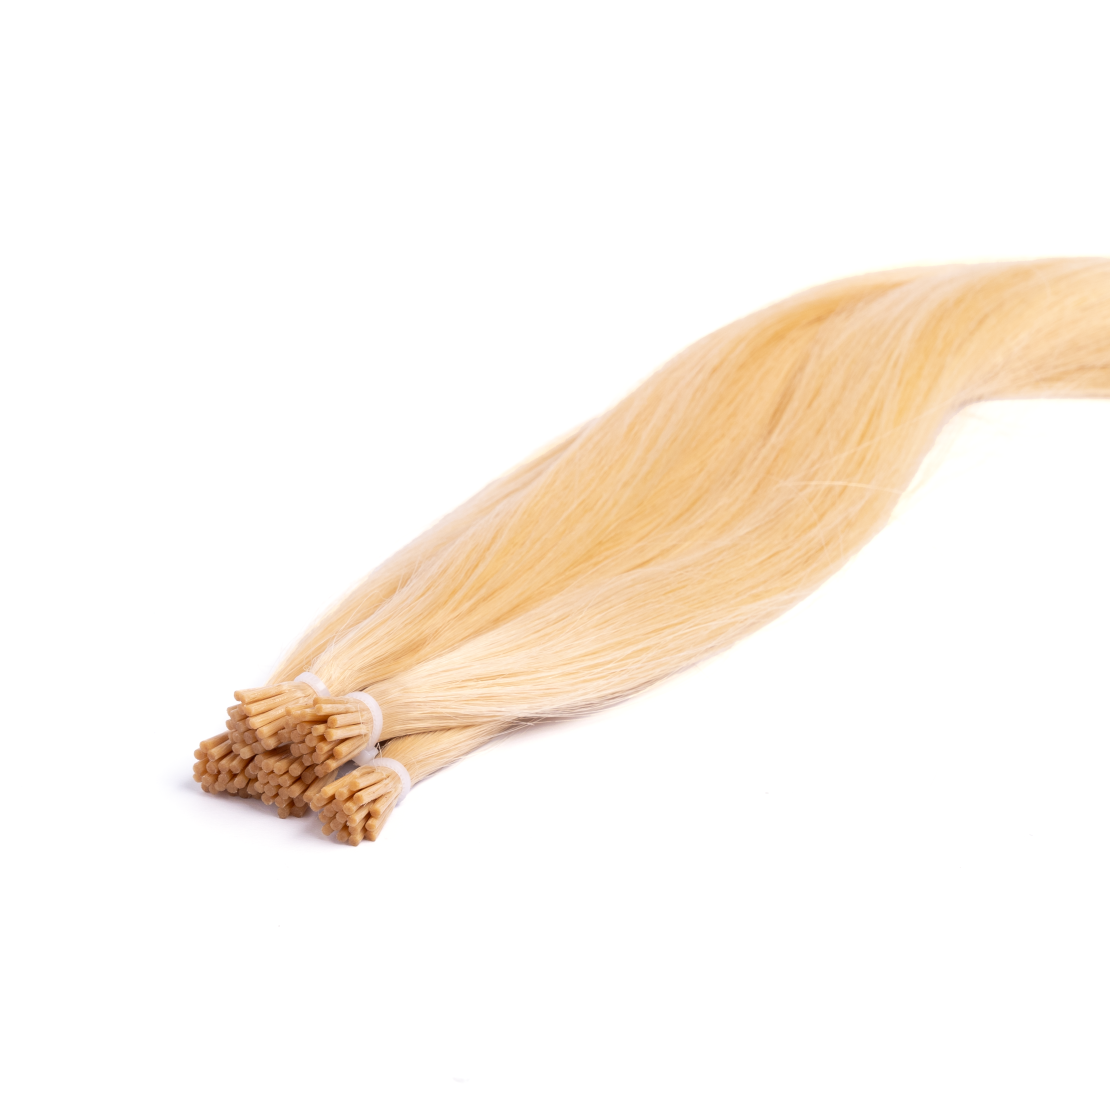 יח שיער איטלקי (אירופאי) בשיטת החרוזים 